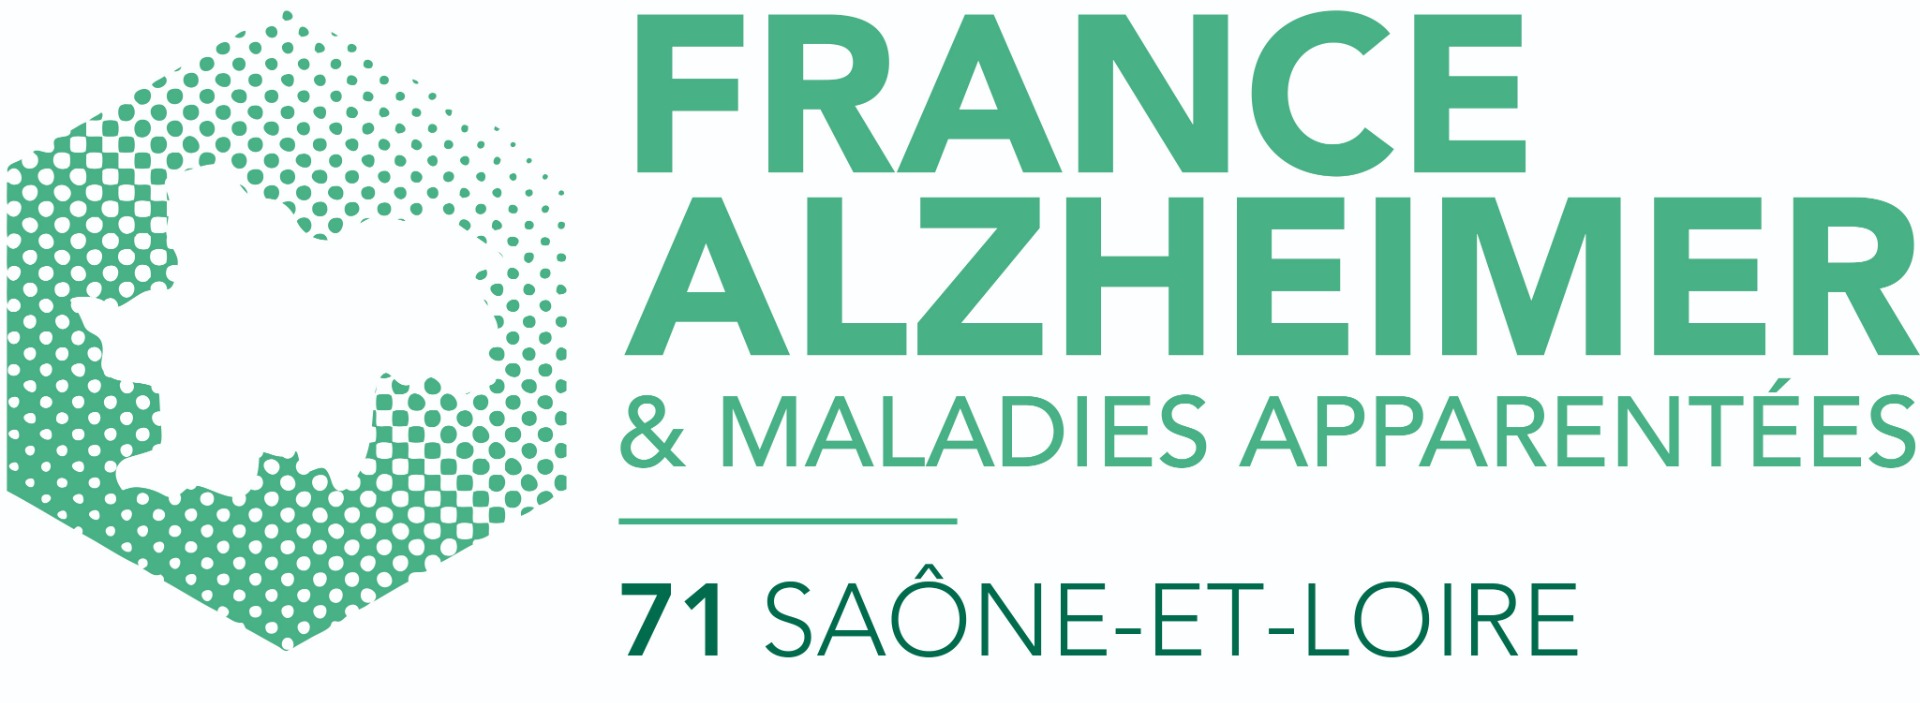 Photo de France Alzheimer Saône-et-Loire à CHALON SUR SAONE